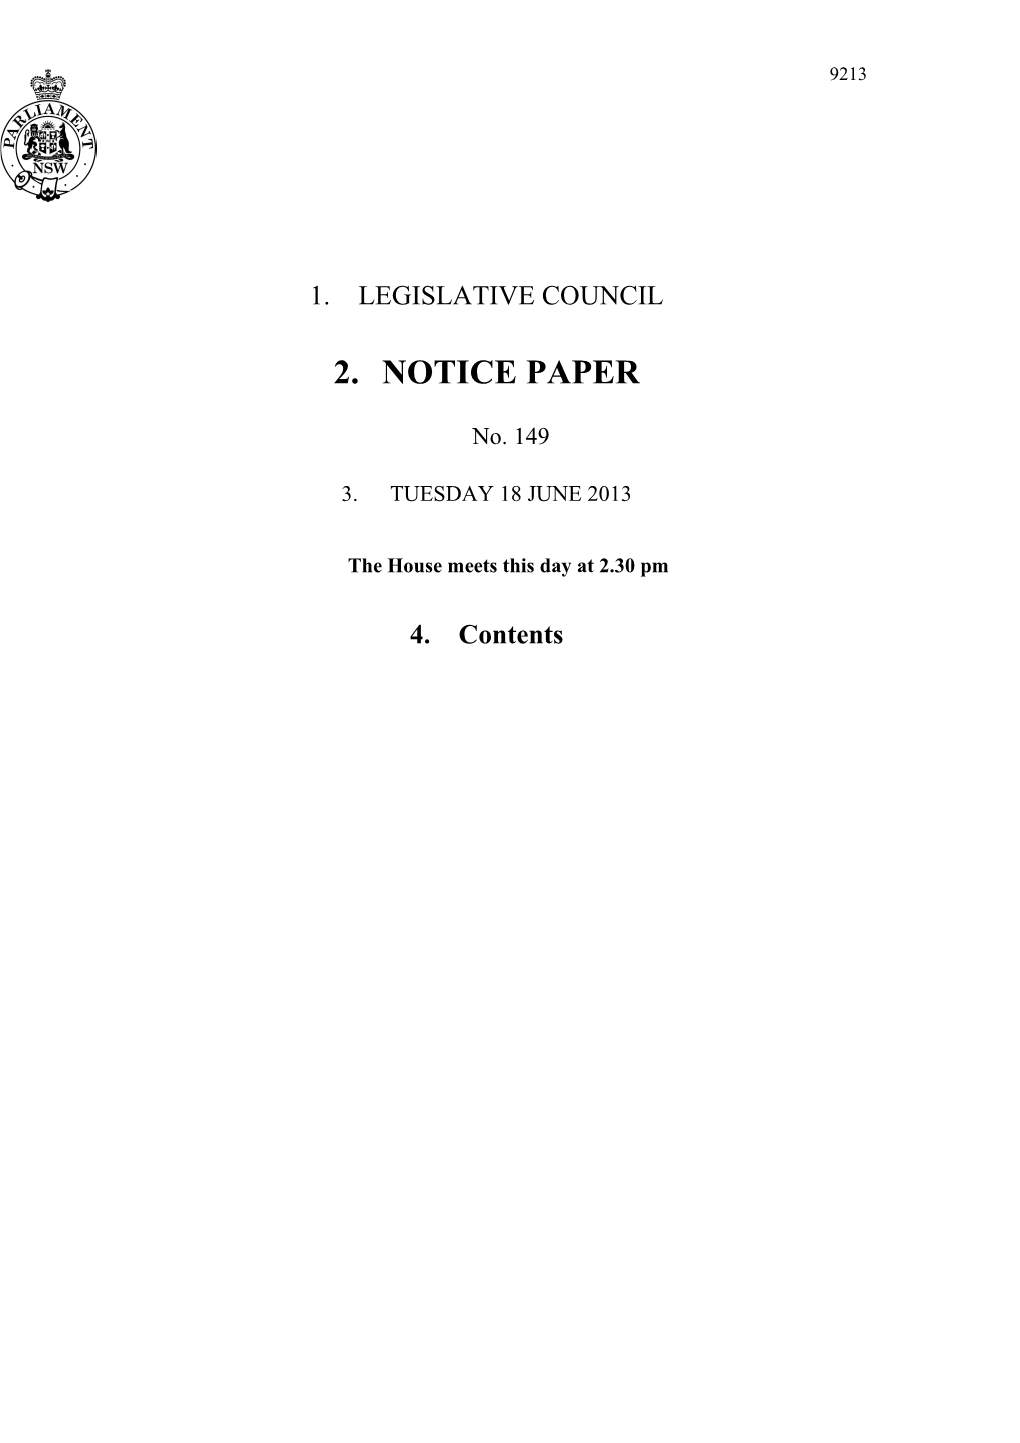 Legislative Council Notice Paper No. 149 Tuesday 18 June 2013